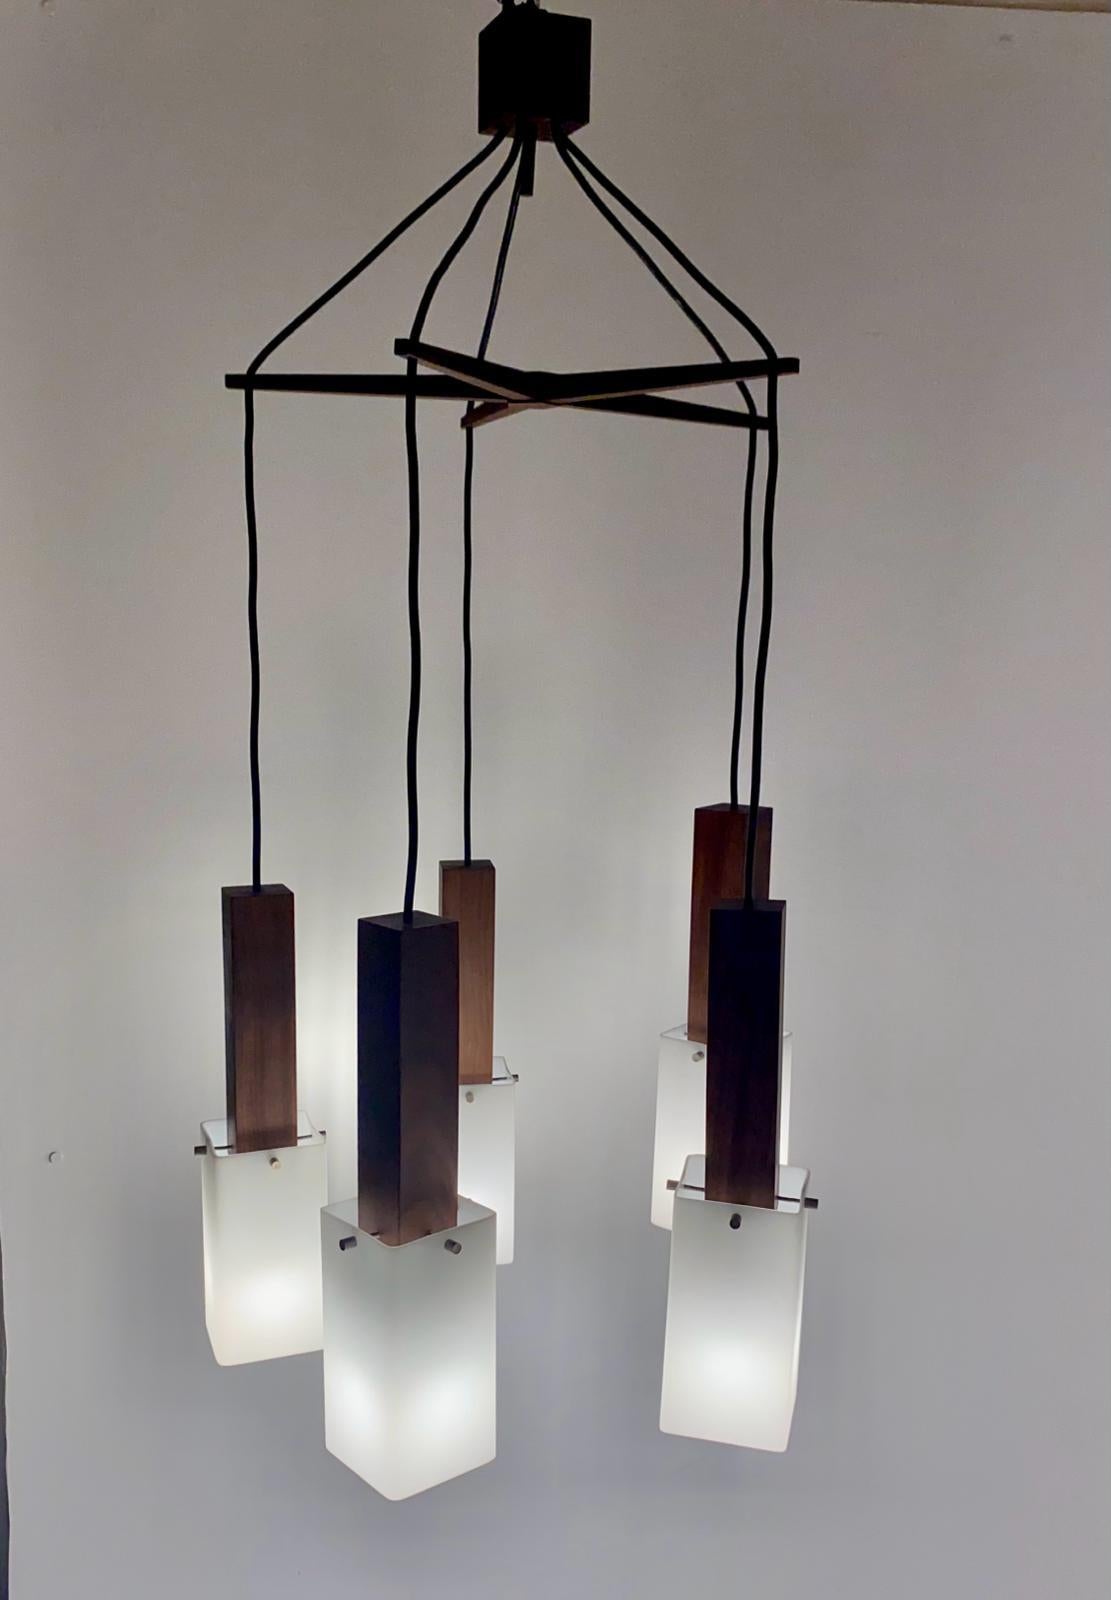 Seltene Vintage Holz fünf Punkt Hängelampe manufatured von Guzzini, Italien in den 1960er Jahren.

Gestell aus Massivholz und Lampenschirme aus Plexiglas. Die Struktur aus dunklem Teakholz und die integrierten Lampenschirme sind sehr raffiniert.